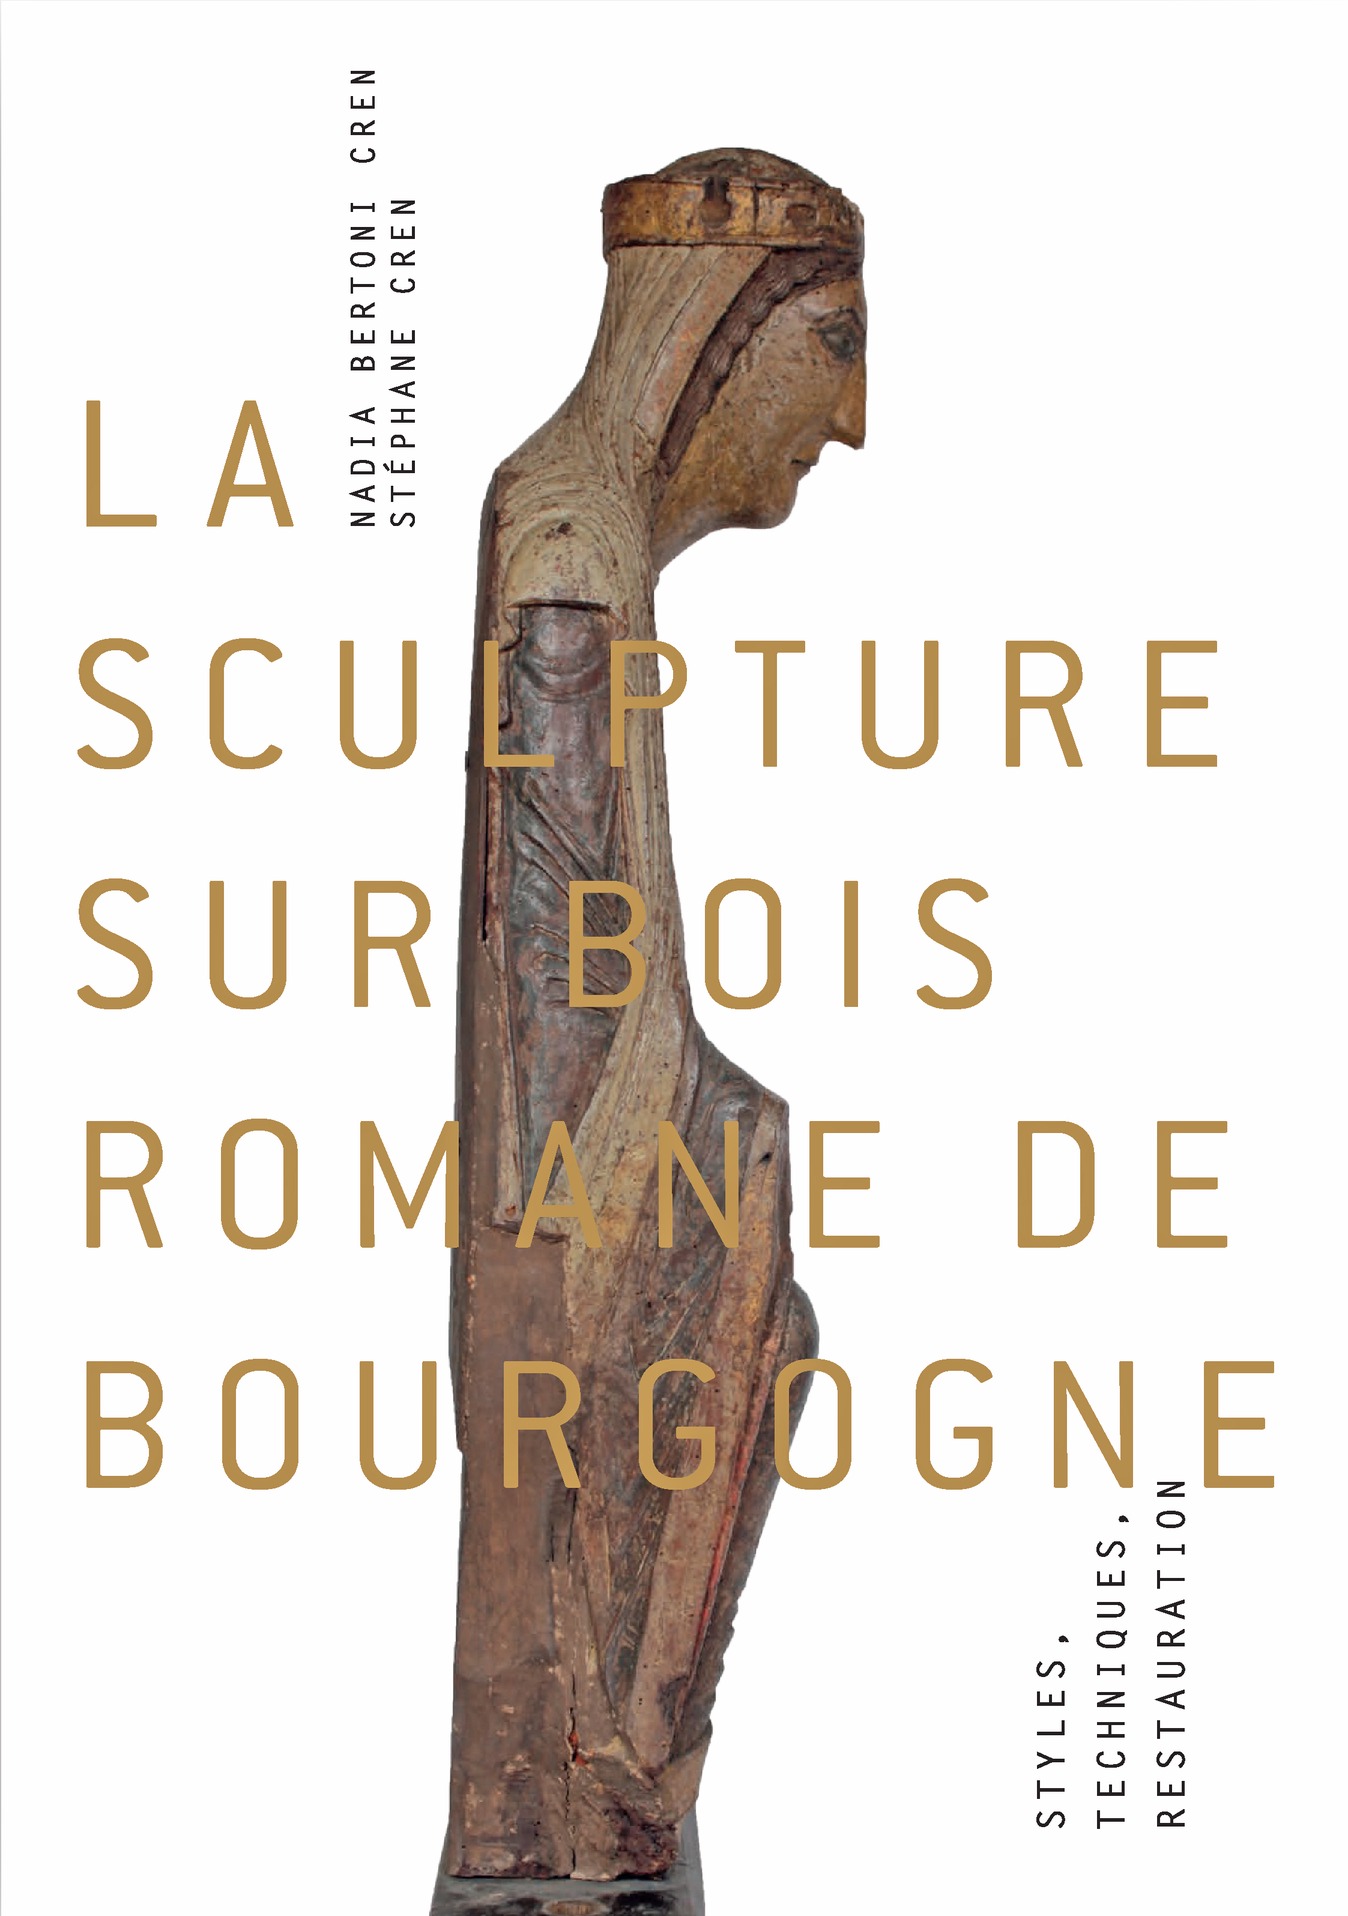 sculpture romane bourgogne